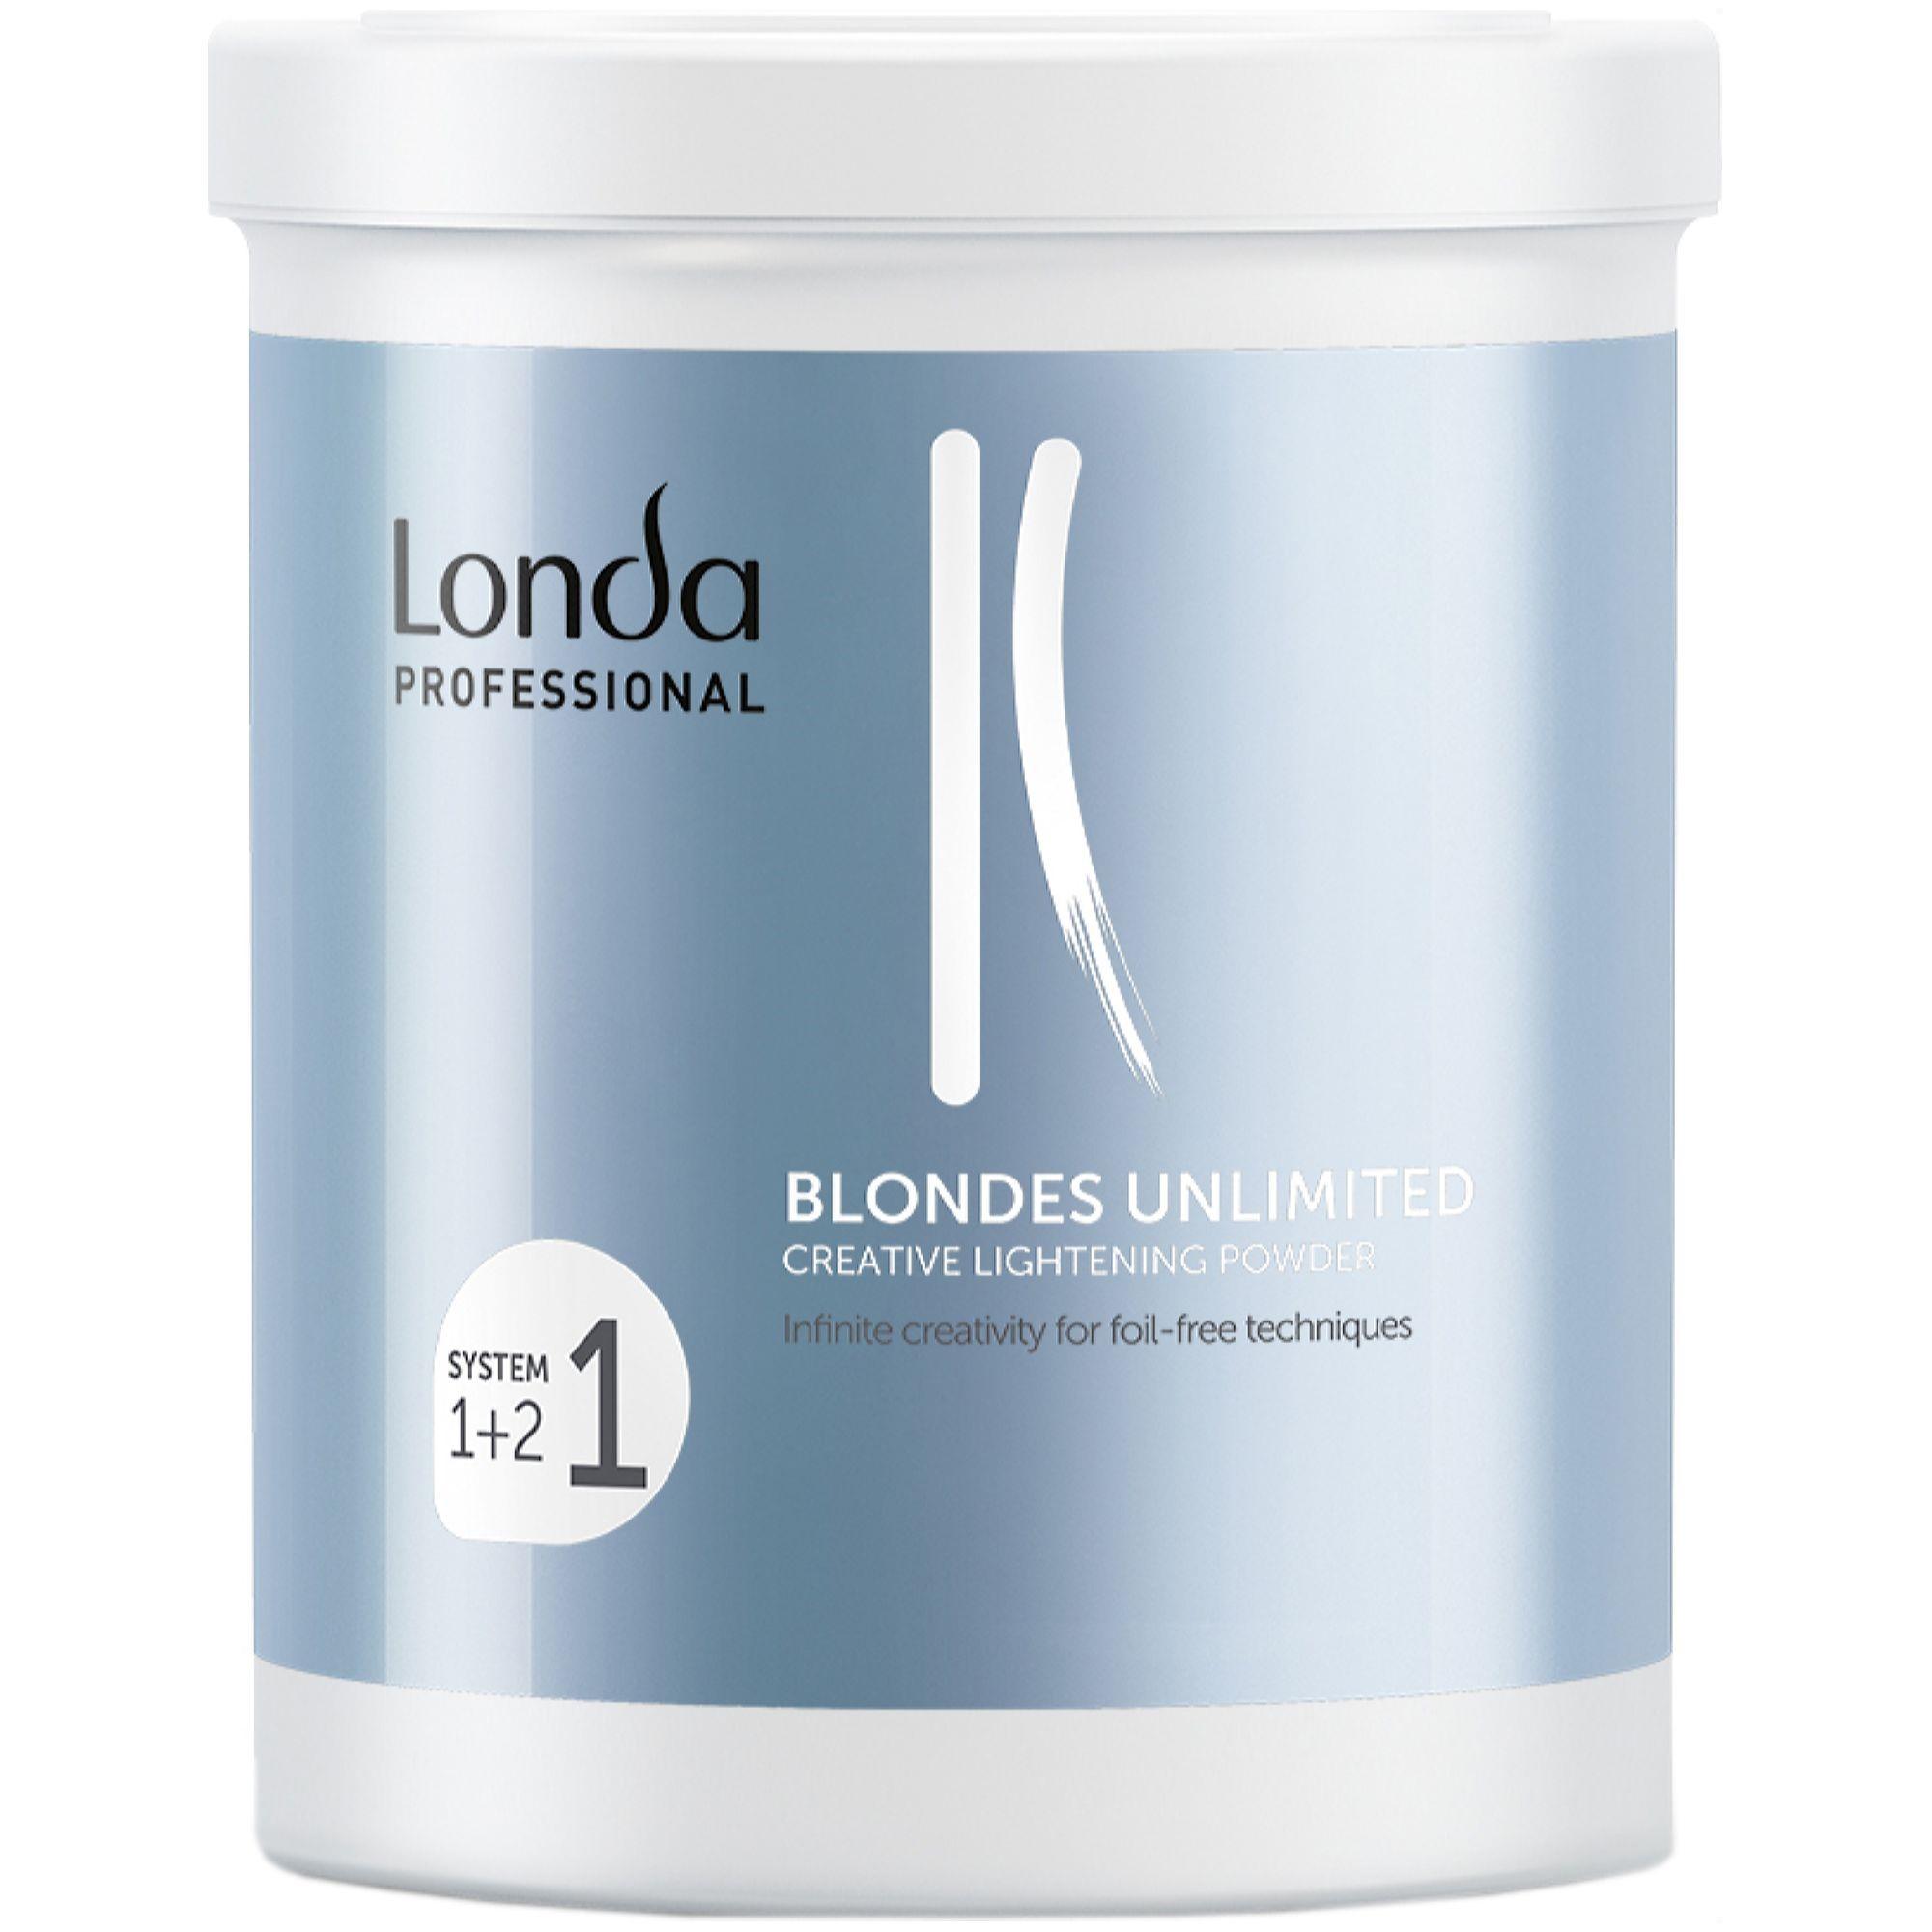 Какой порошок для осветления волос. Londa blondes Unlimited креативная осветляющая пудра 400 мл. Londa blondes Unlimited креативно-осветляющая пудра 400 г. Londa professional пудра для осветления. Порошок для волос осветляющий лонда профессионал.